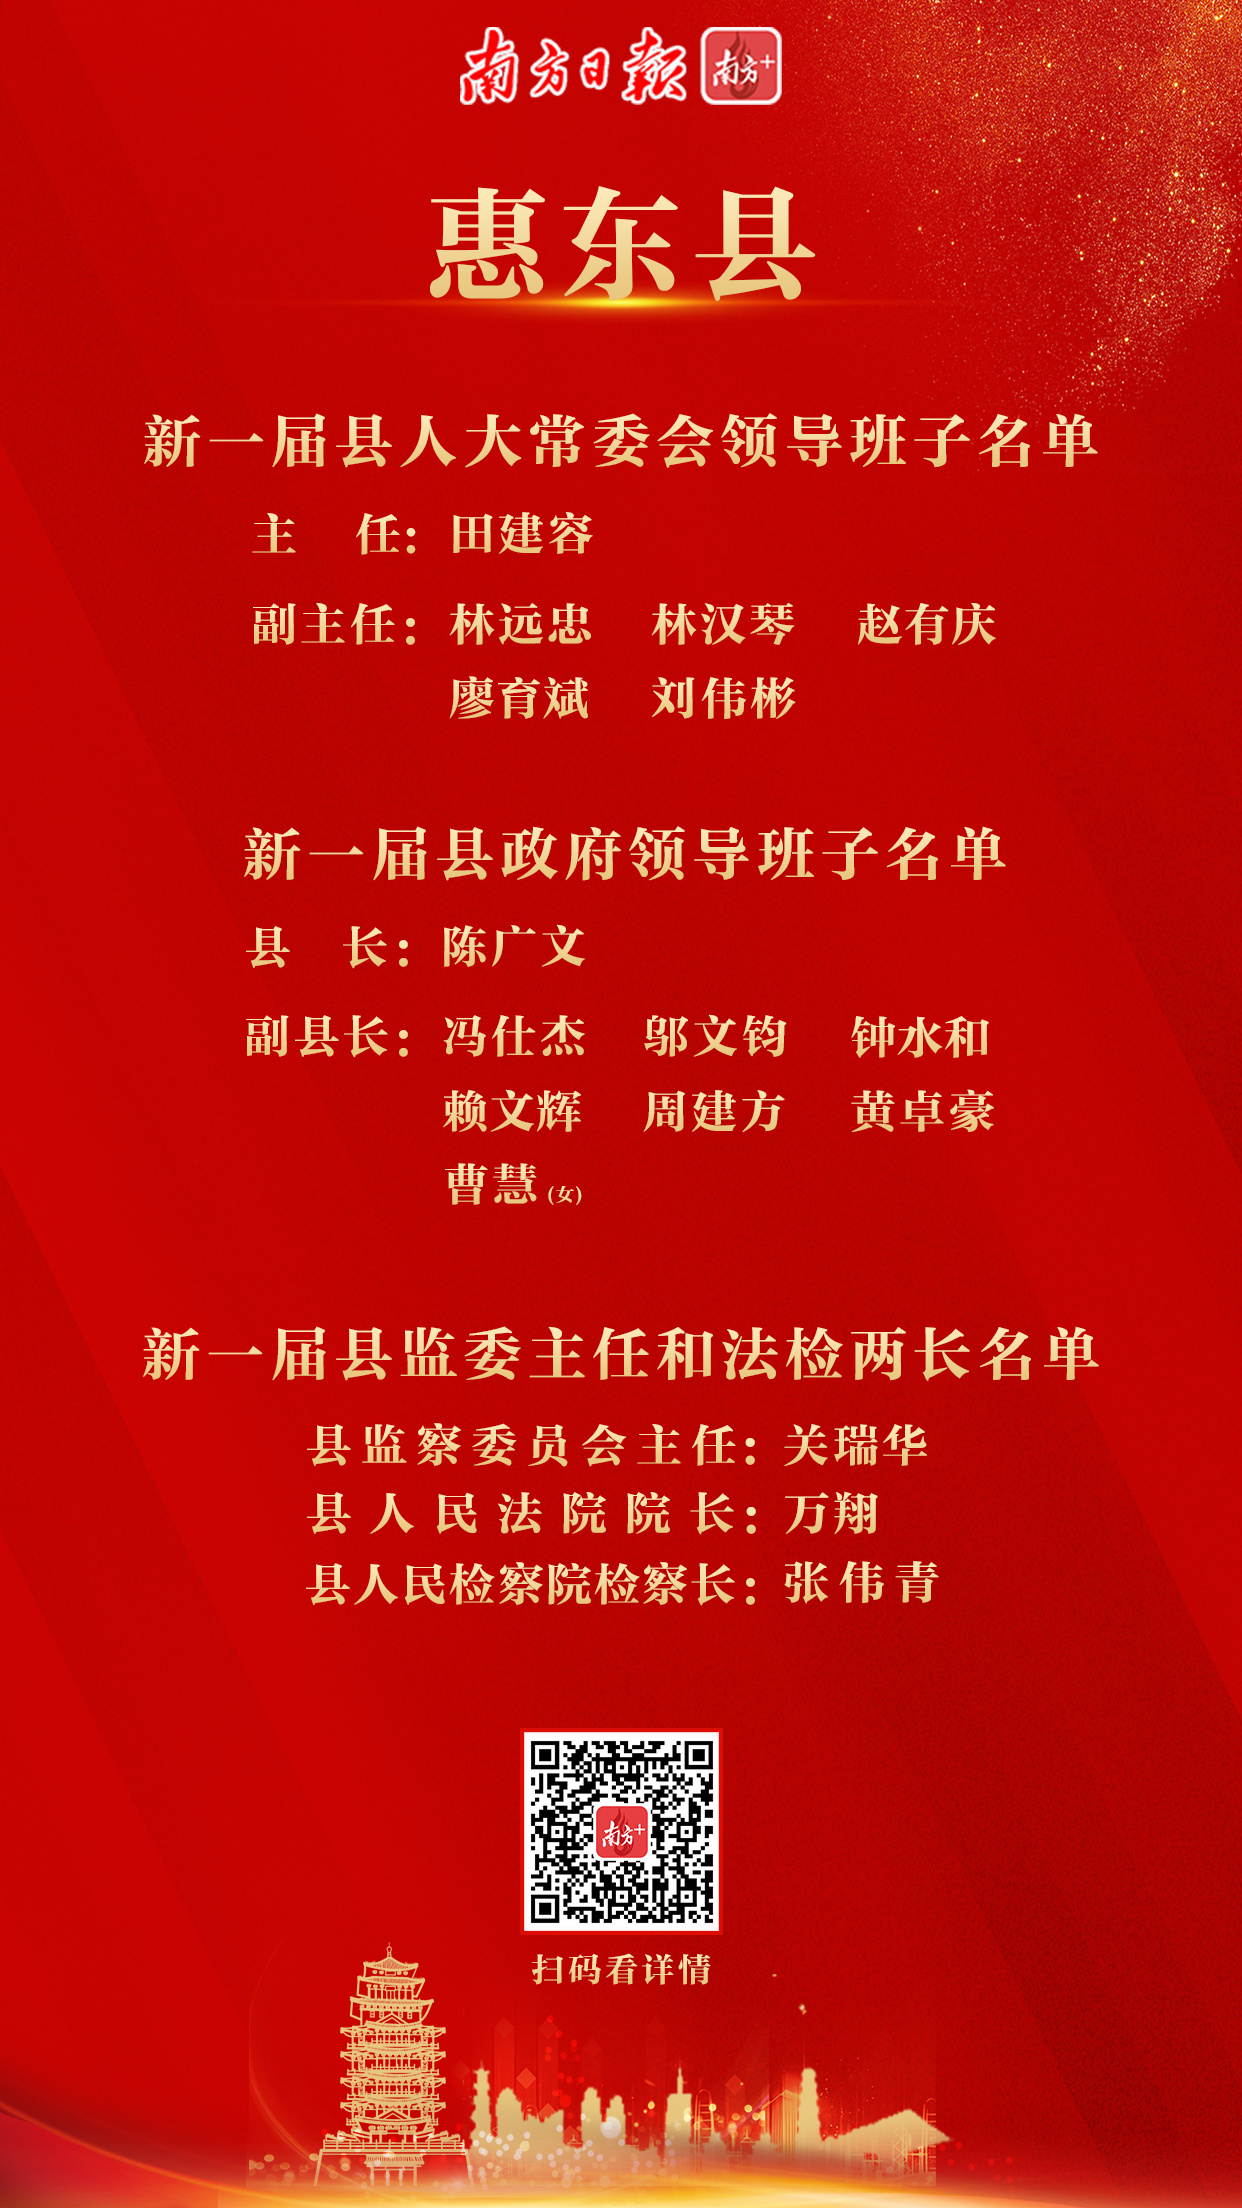 并表决了惠东县十一届人大专门委员会组成人员人选名单